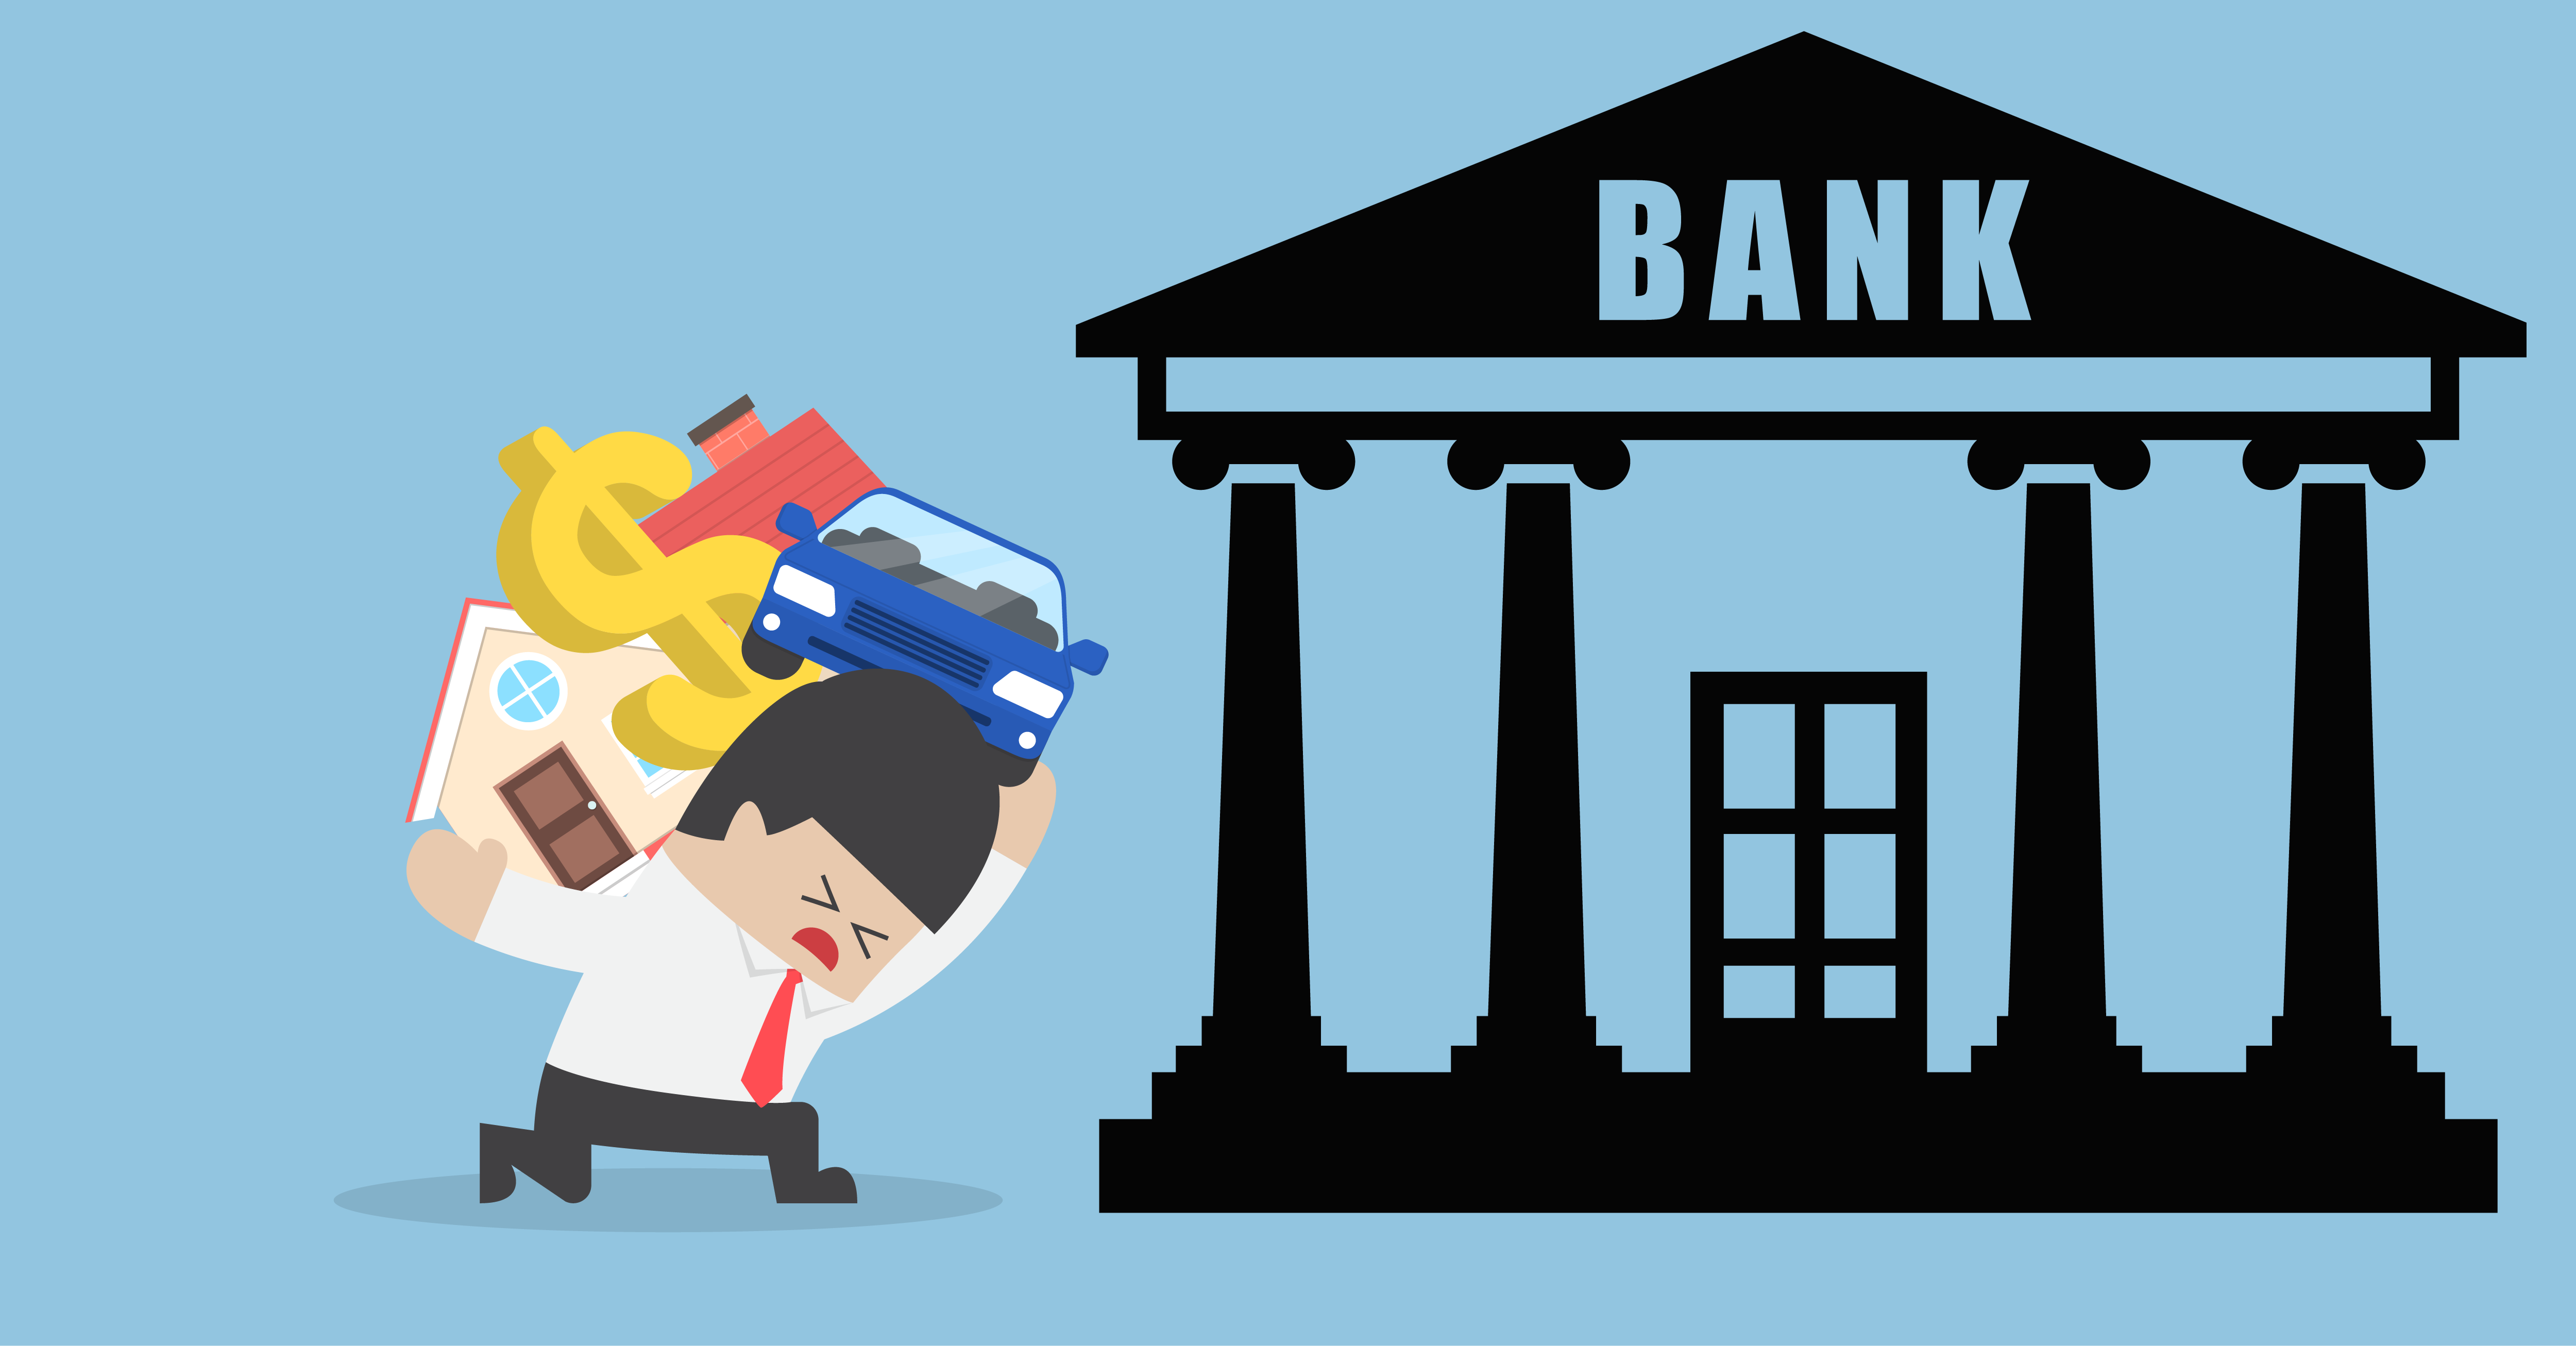 Bank pp. Банк иллюстрация. Банк картинка. Банк для презентации. Банк мультяшный.